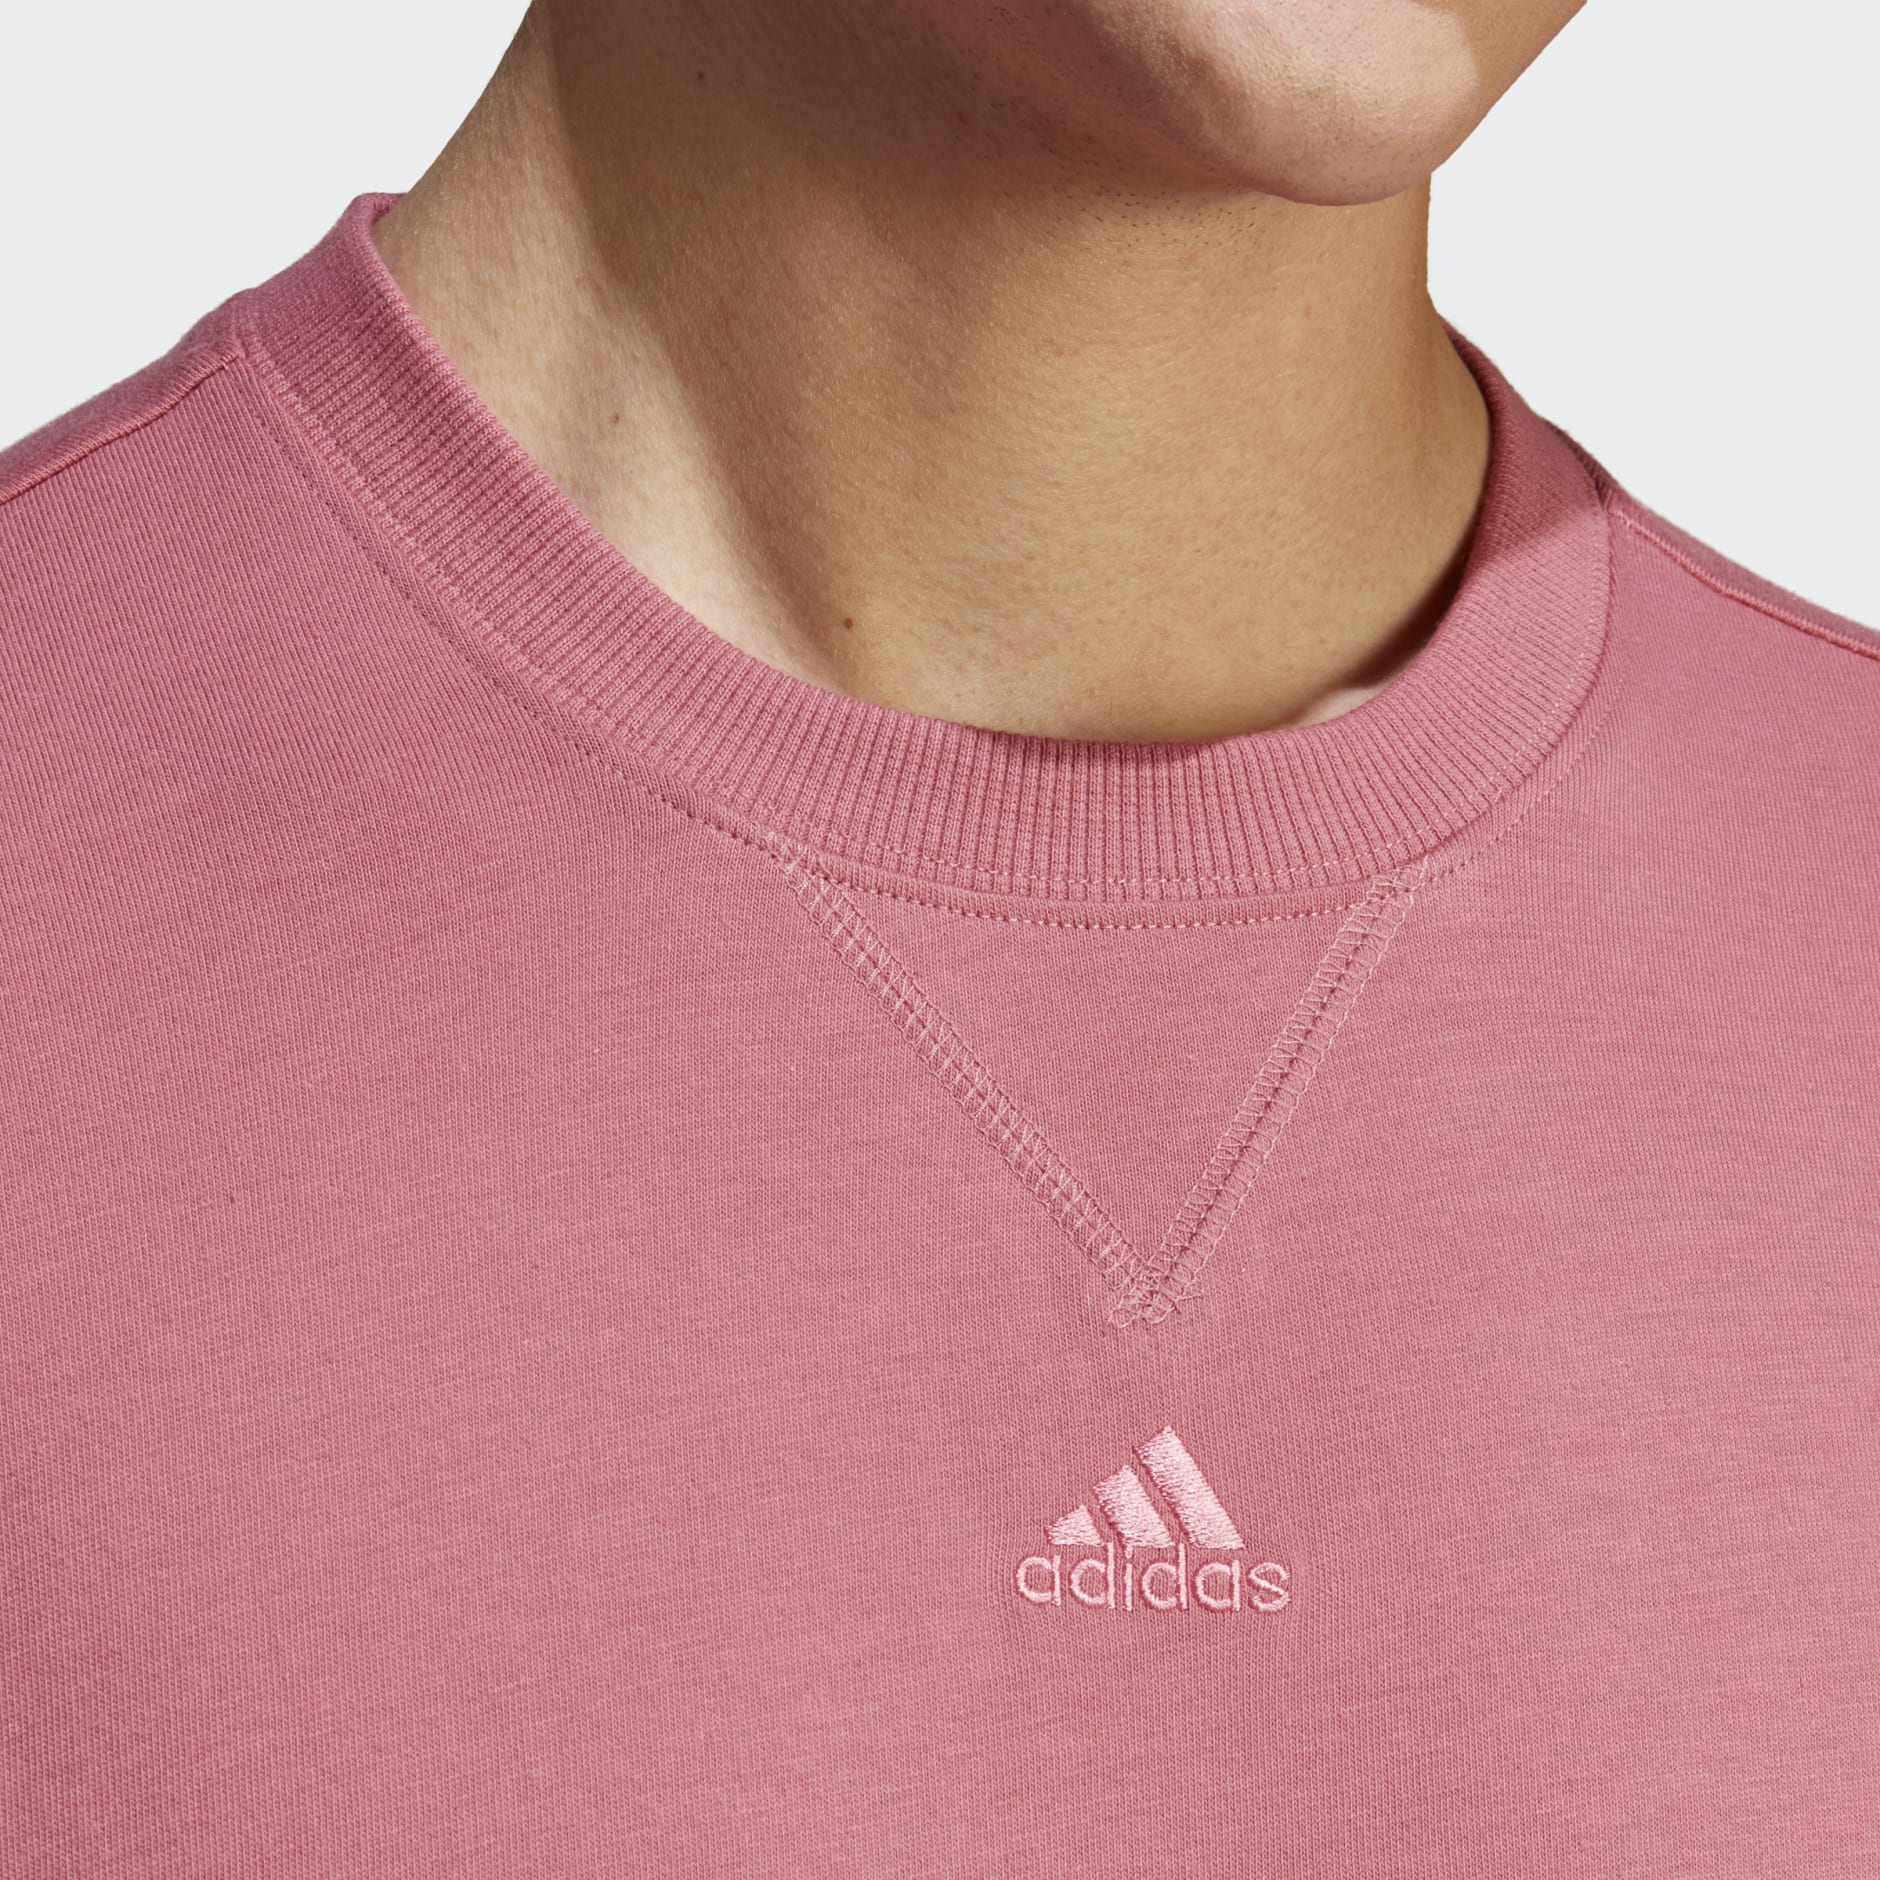 Clothing - ALL - Pink Tee adidas | SZN Israel